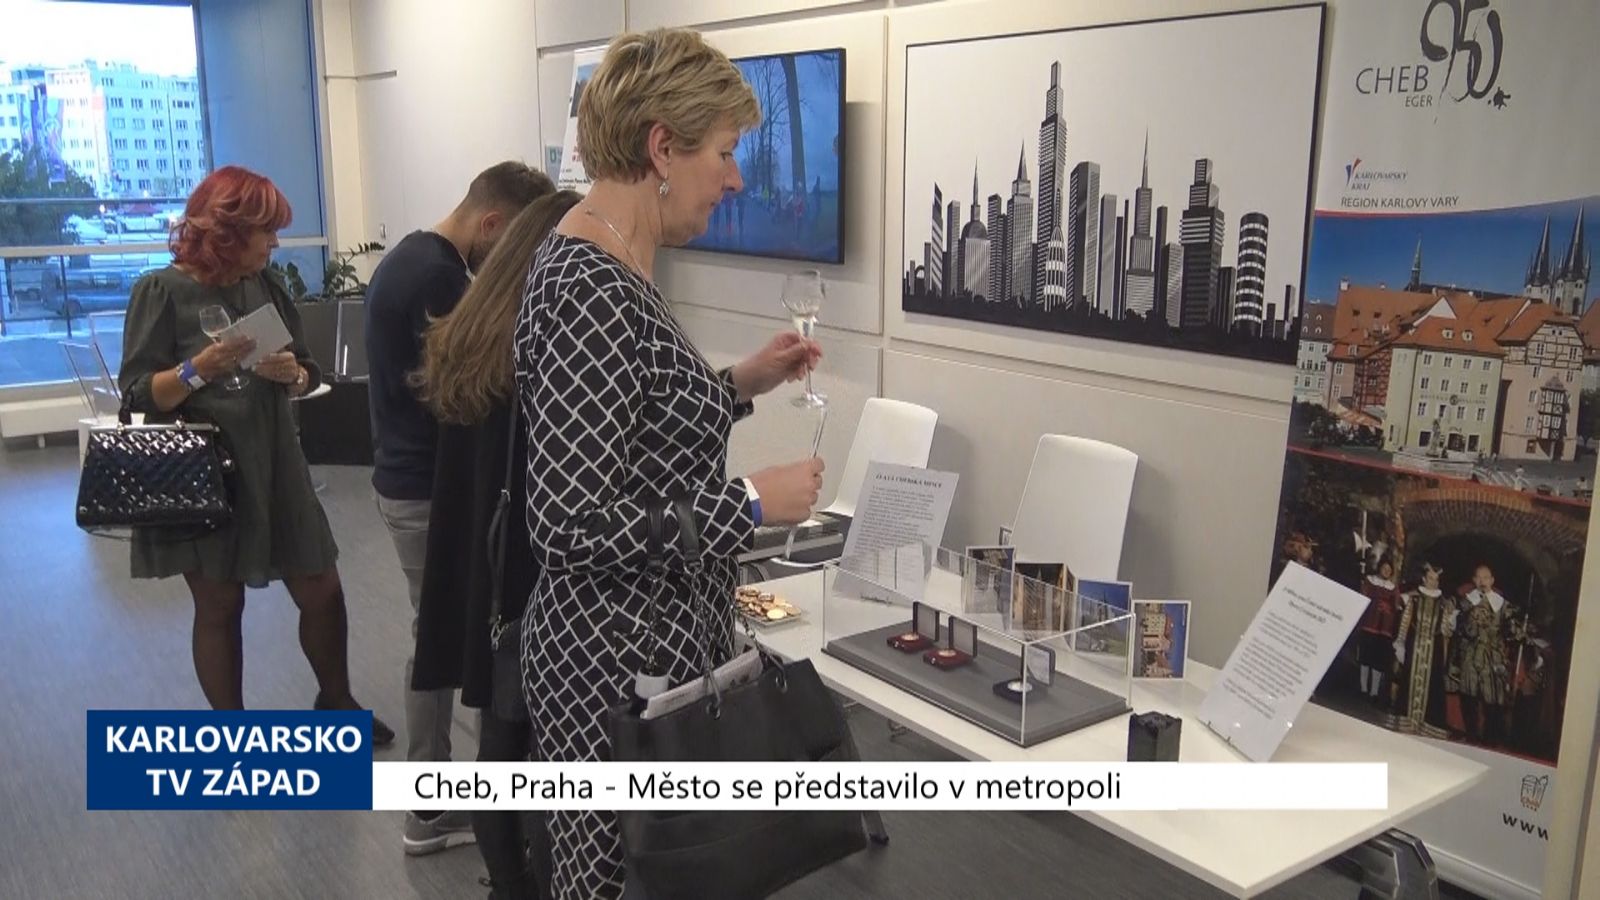 Cheb, Praha: Město se představilo v metropoli (TV Západ)